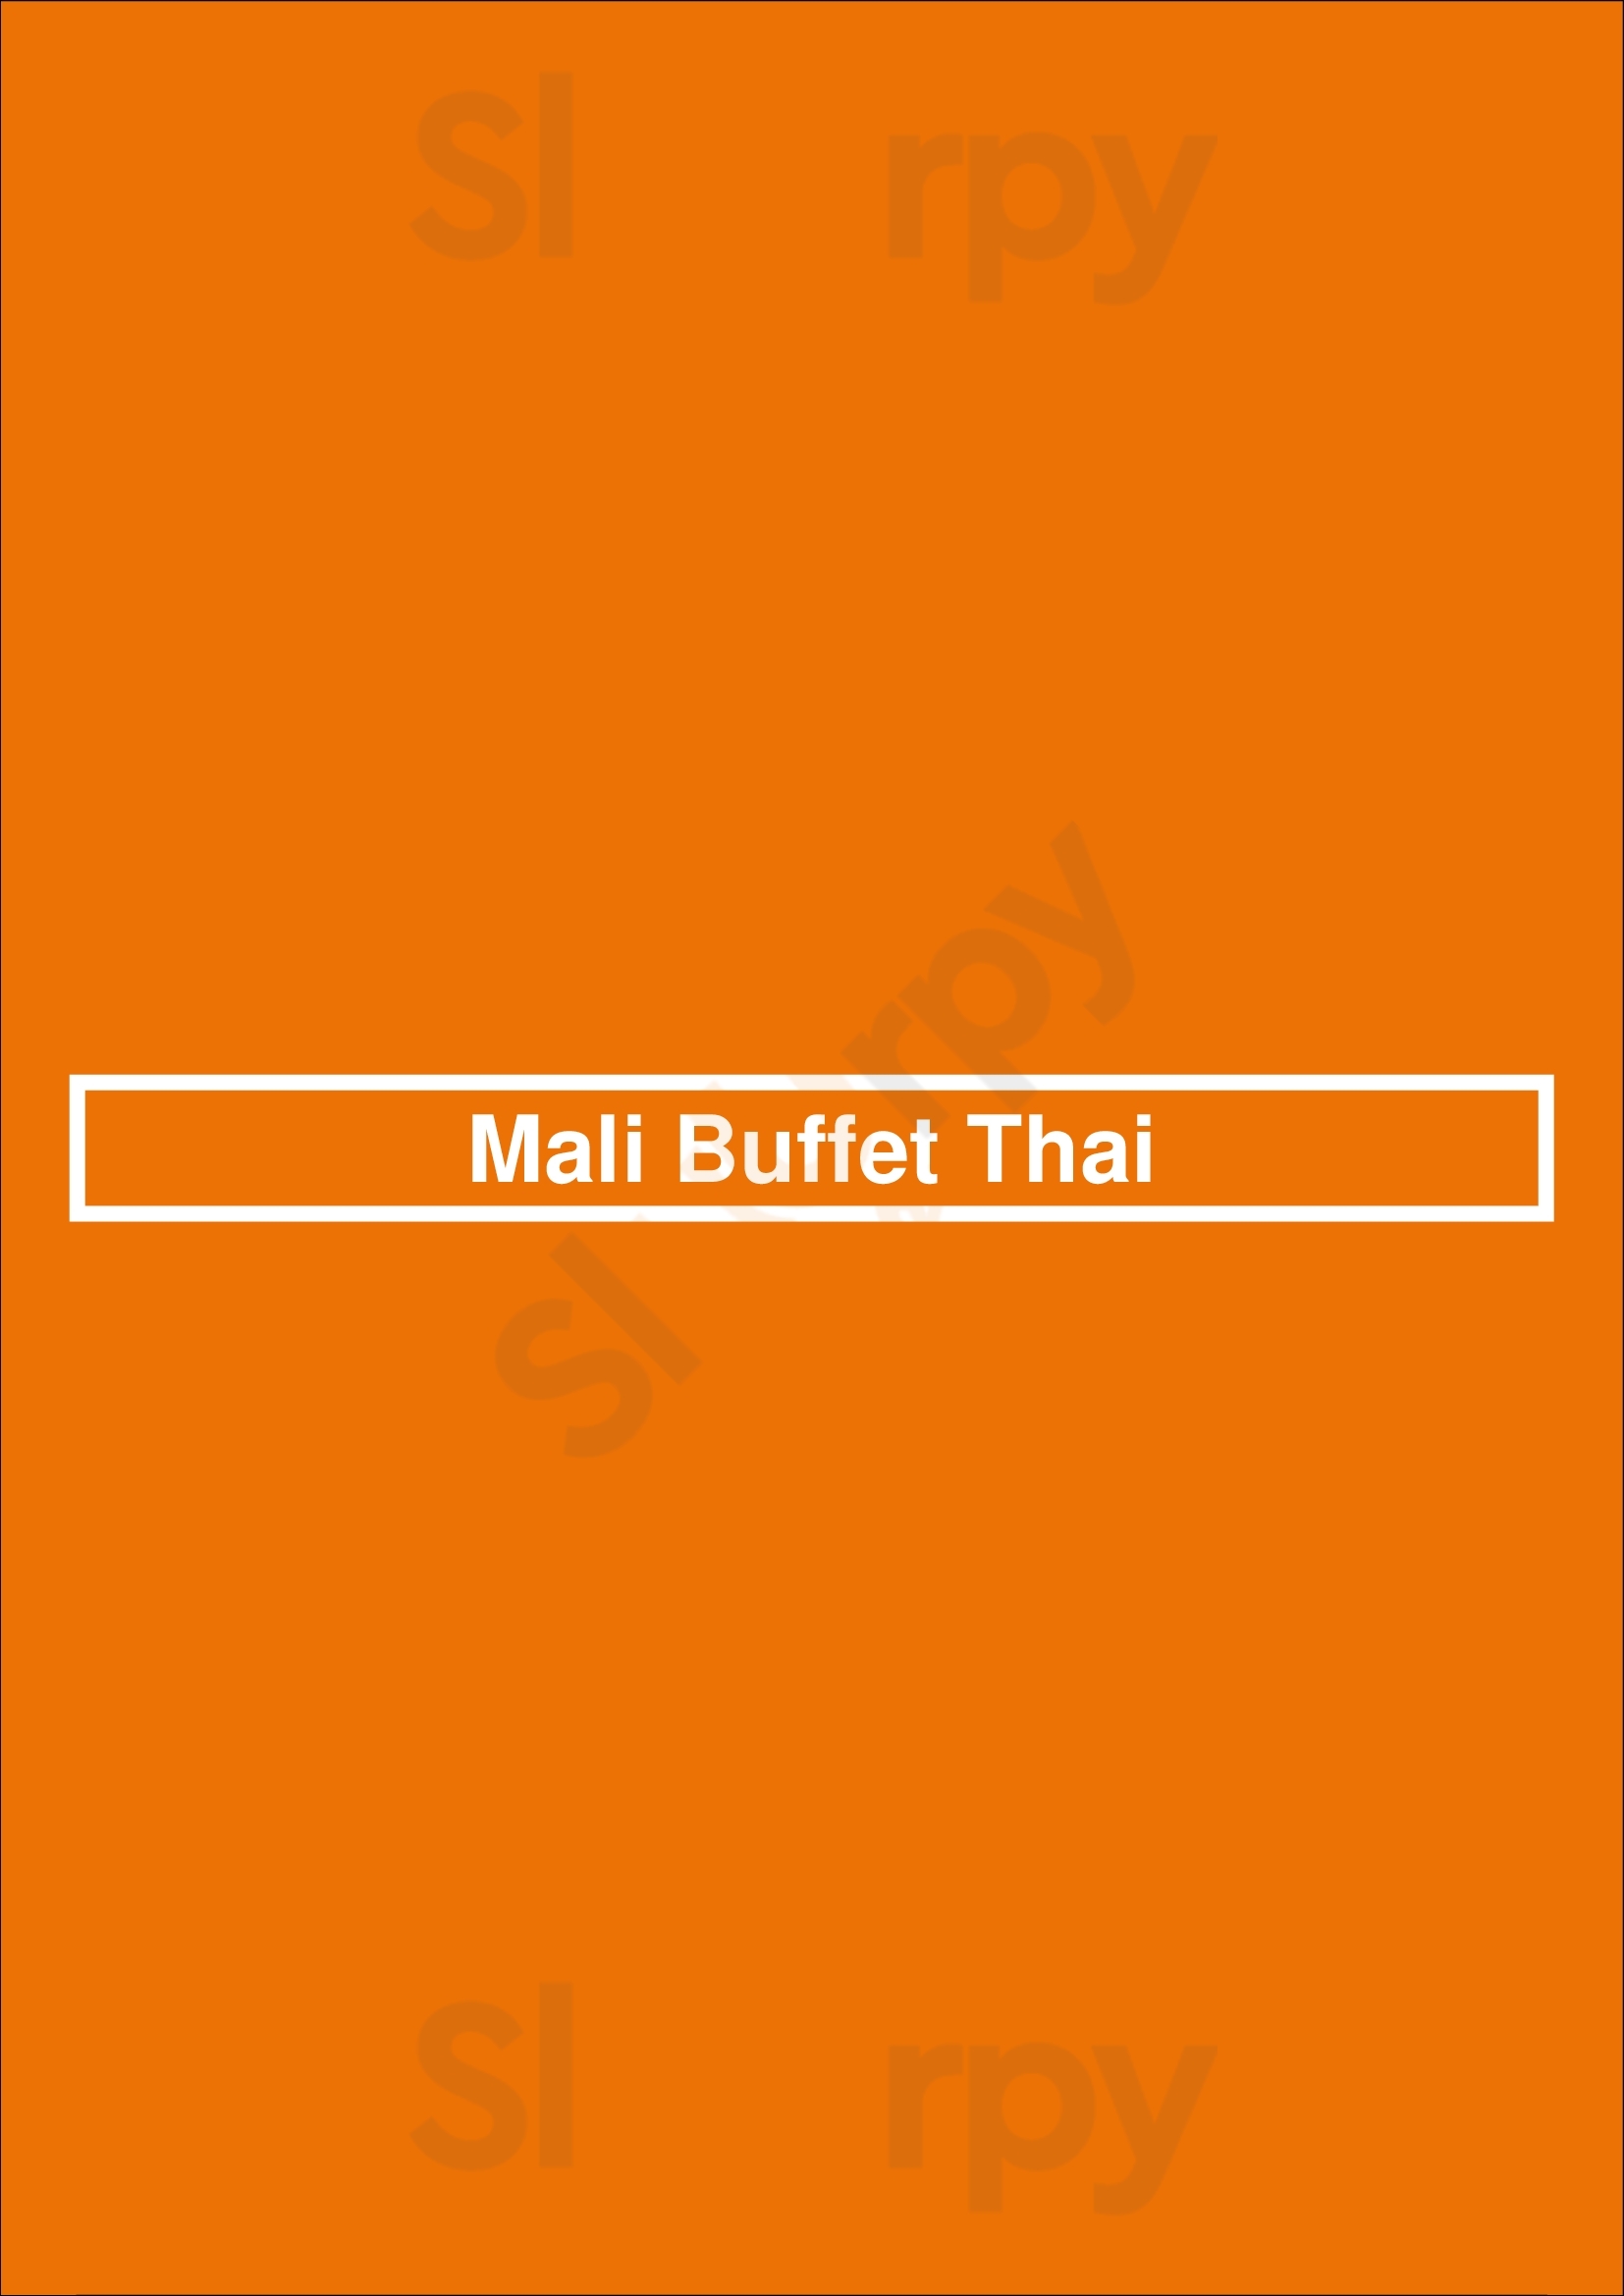 Mali Buffet Thai Paris Menu - 1